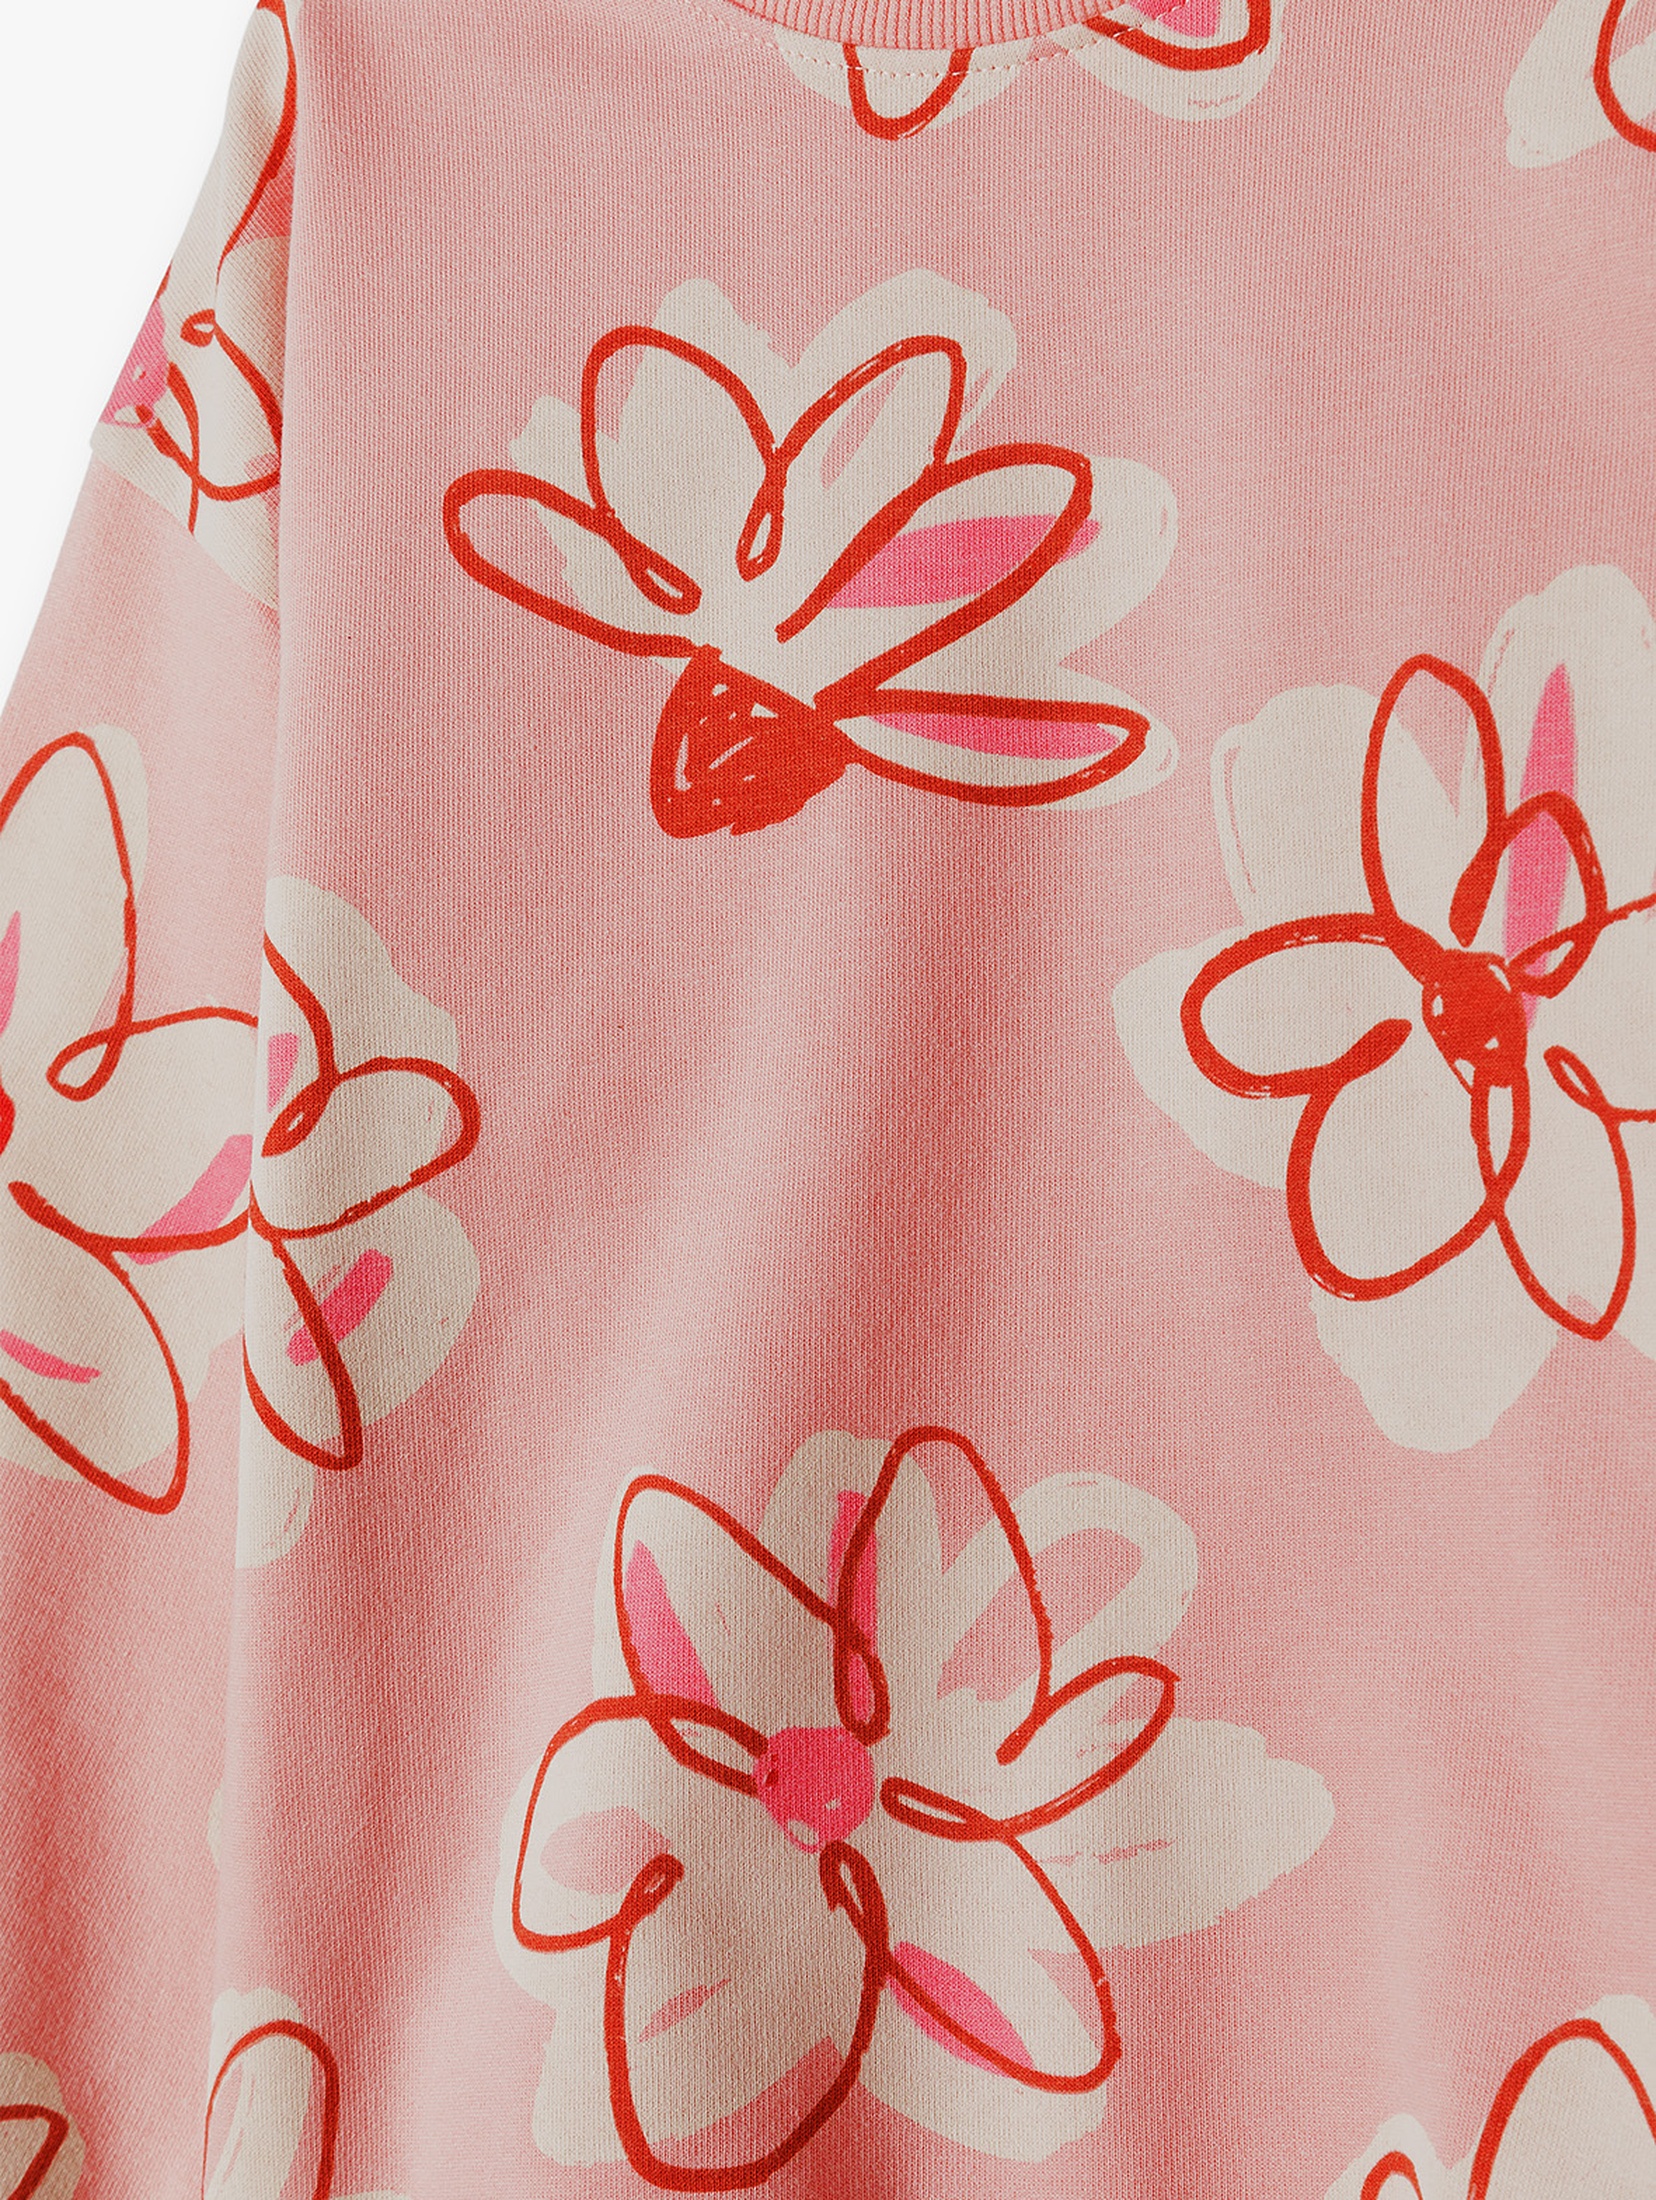 Bluza dresowa dziewczęca - różowa w kwiatki